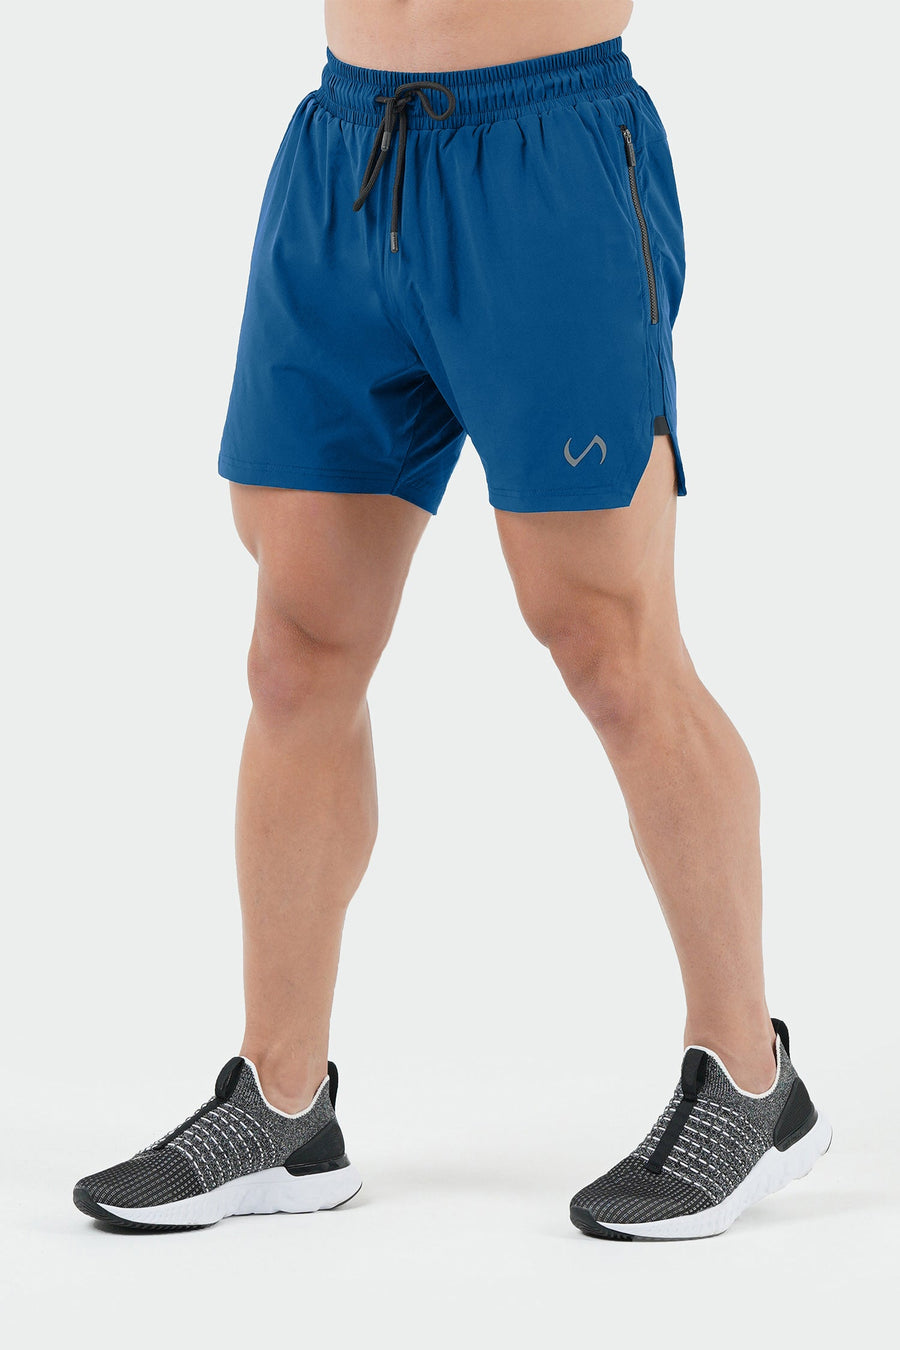 TLF Vital Element 5” Gym Shorts - 5 Inch inseam Athletic Shorts - Blue - 1